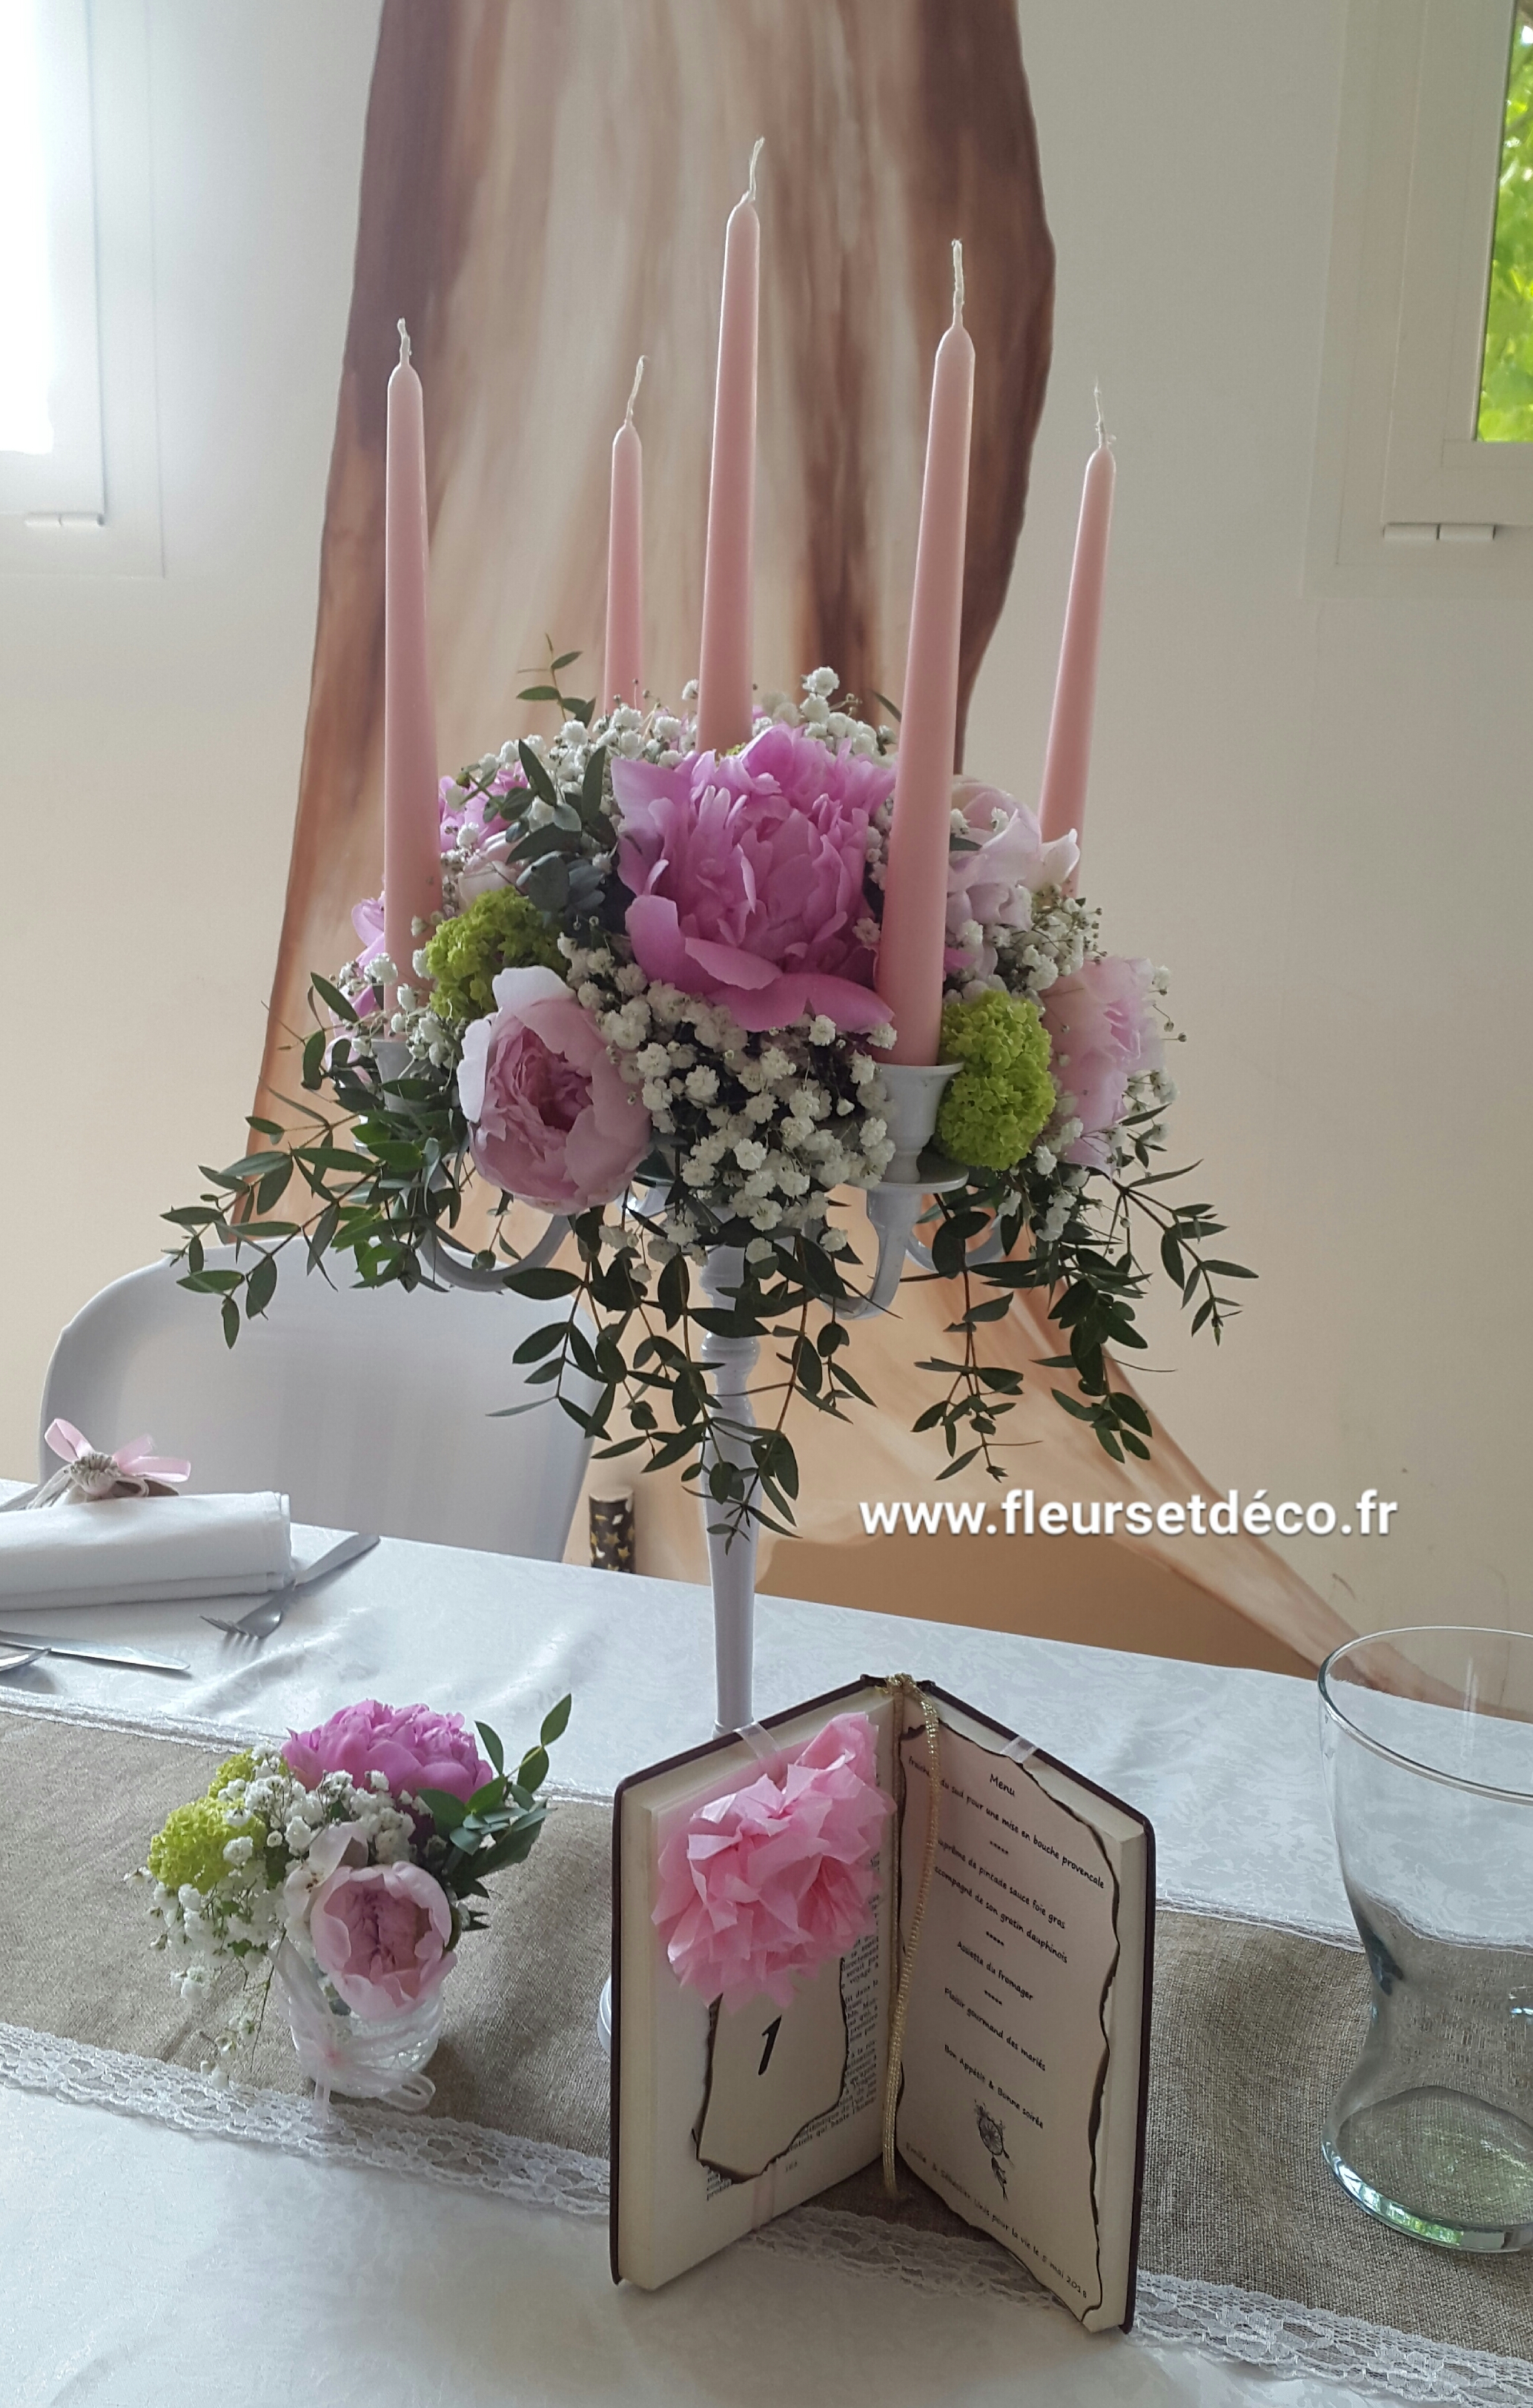 Fleuriste mariage Drôme